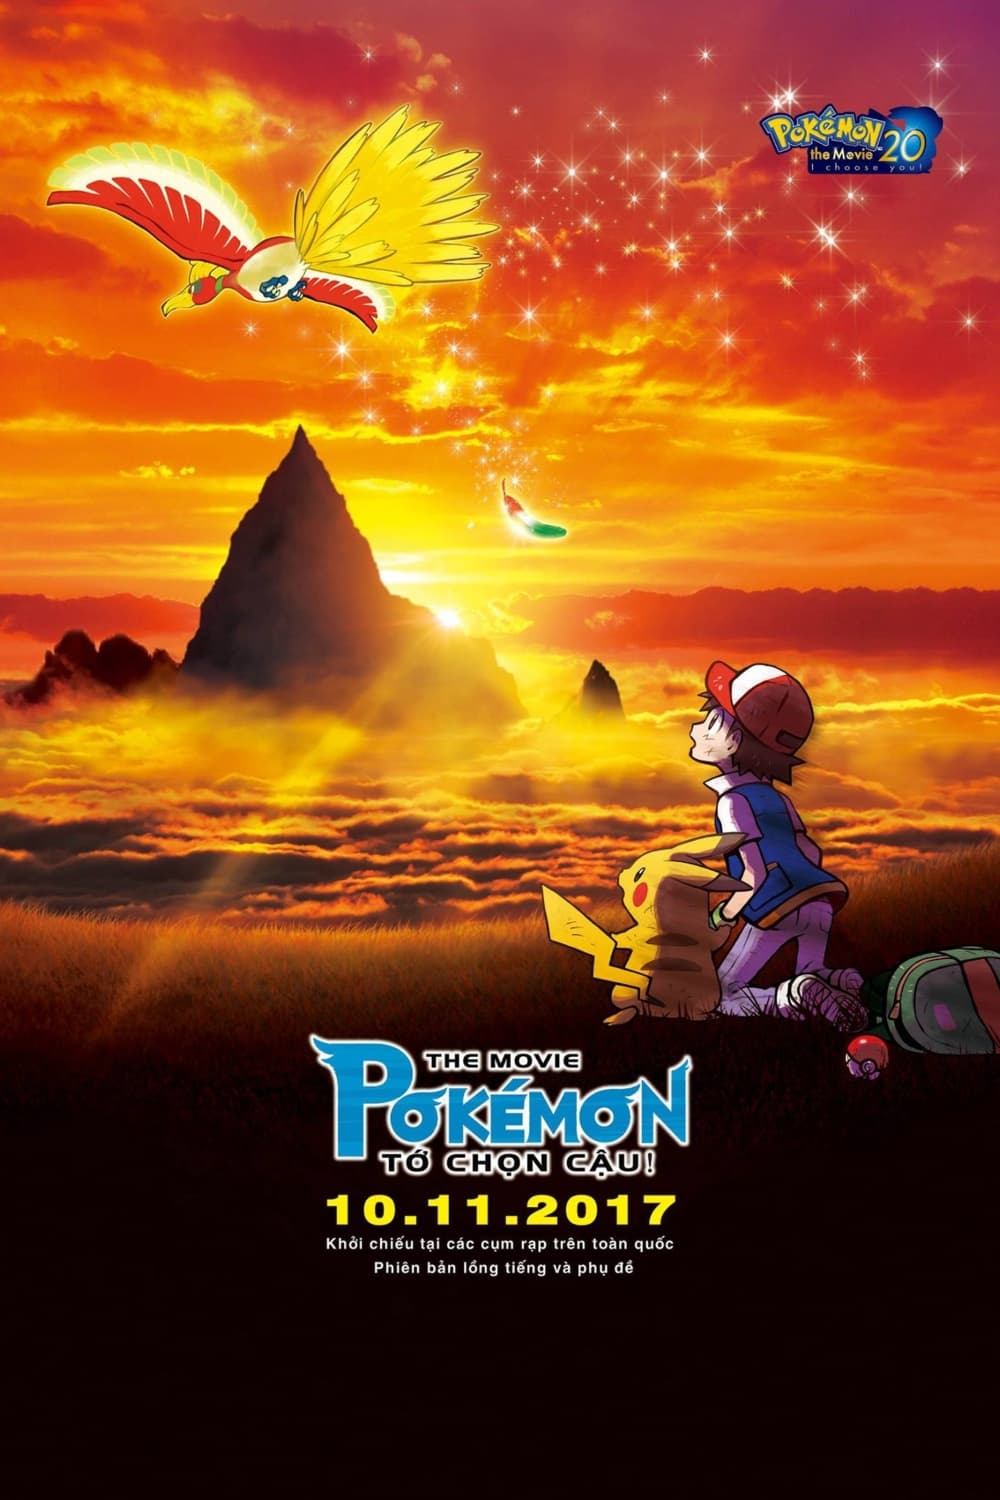 Pokémon the Movie: Tớ Chọn Cậu! - Pokémon the Movie: I Choose You! (2017)